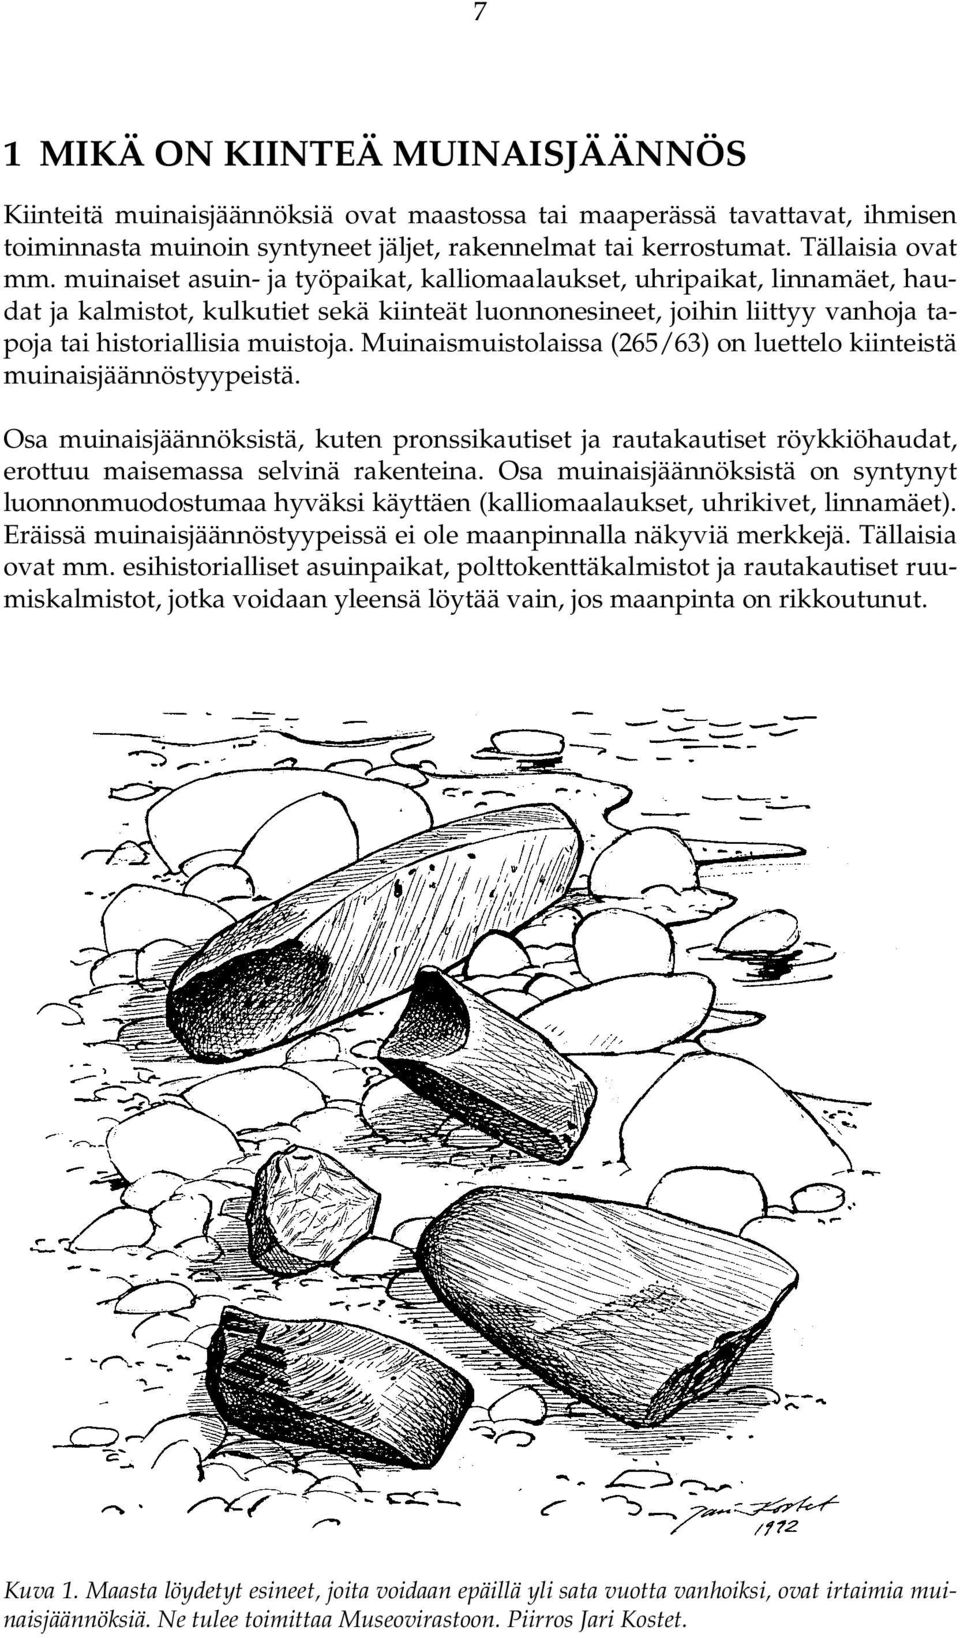 Muinaismuistolaissa (265/63) on luettelo kiinteistä muinaisjäännöstyypeistä. Osa muinaisjäännöksistä, kuten pronssikautiset ja rautakautiset röykkiöhaudat, erottuu maisemassa selvinä rakenteina.